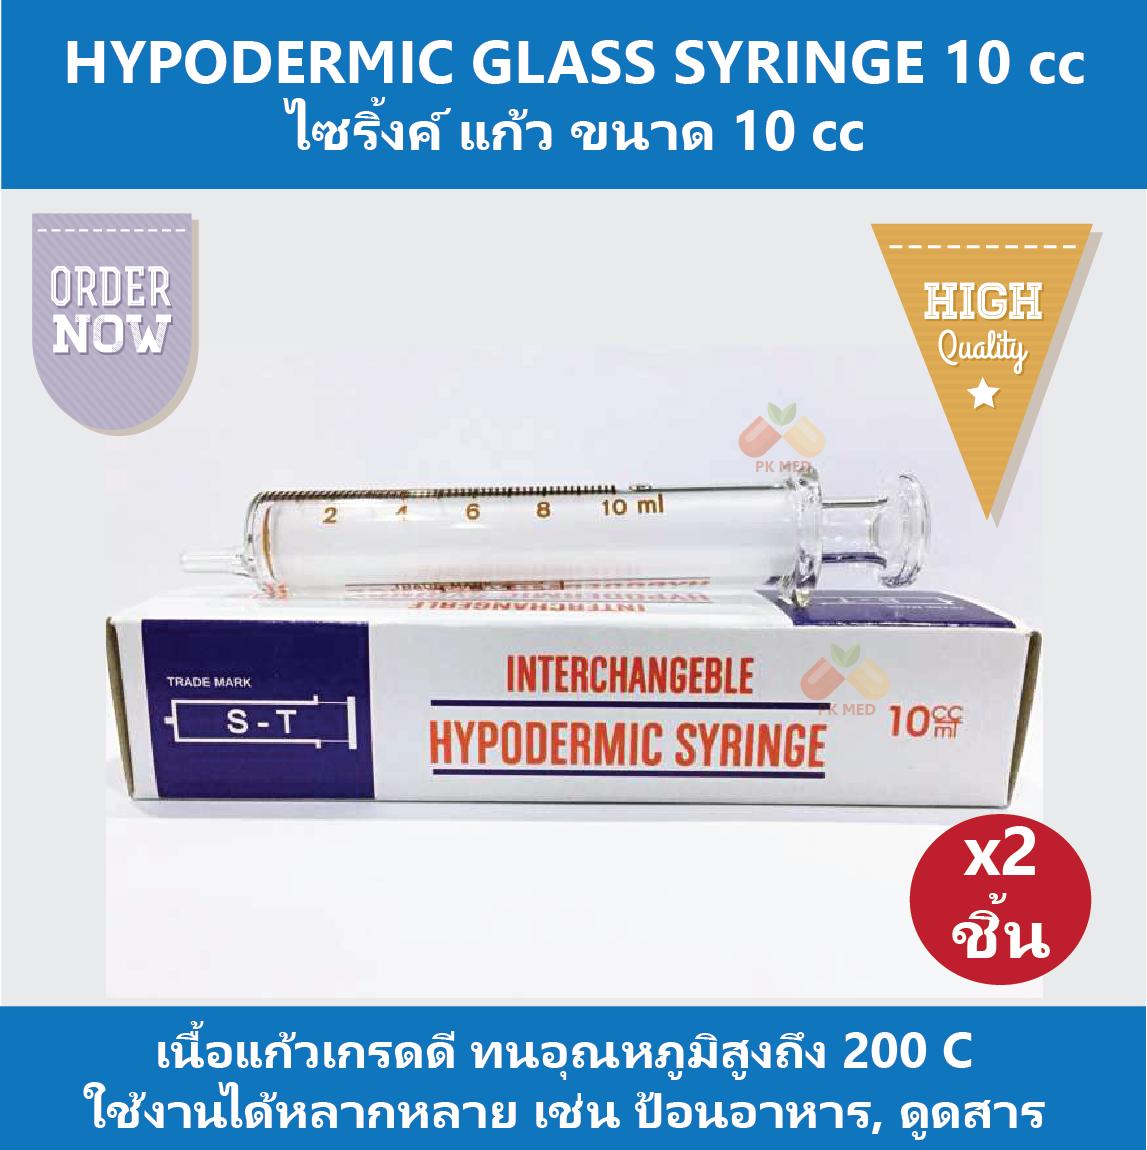 (2 ชิ้น) HYPODERMIC GLASS SYRINGE กระบอกฉีดยา ไซริ้งค์ ไซริ้ง ชนิดแก้ว (ไม่มีเข็ม) 10 cc สำหรับใช้ป้อนอาหาร ดูดสารต่างๆ